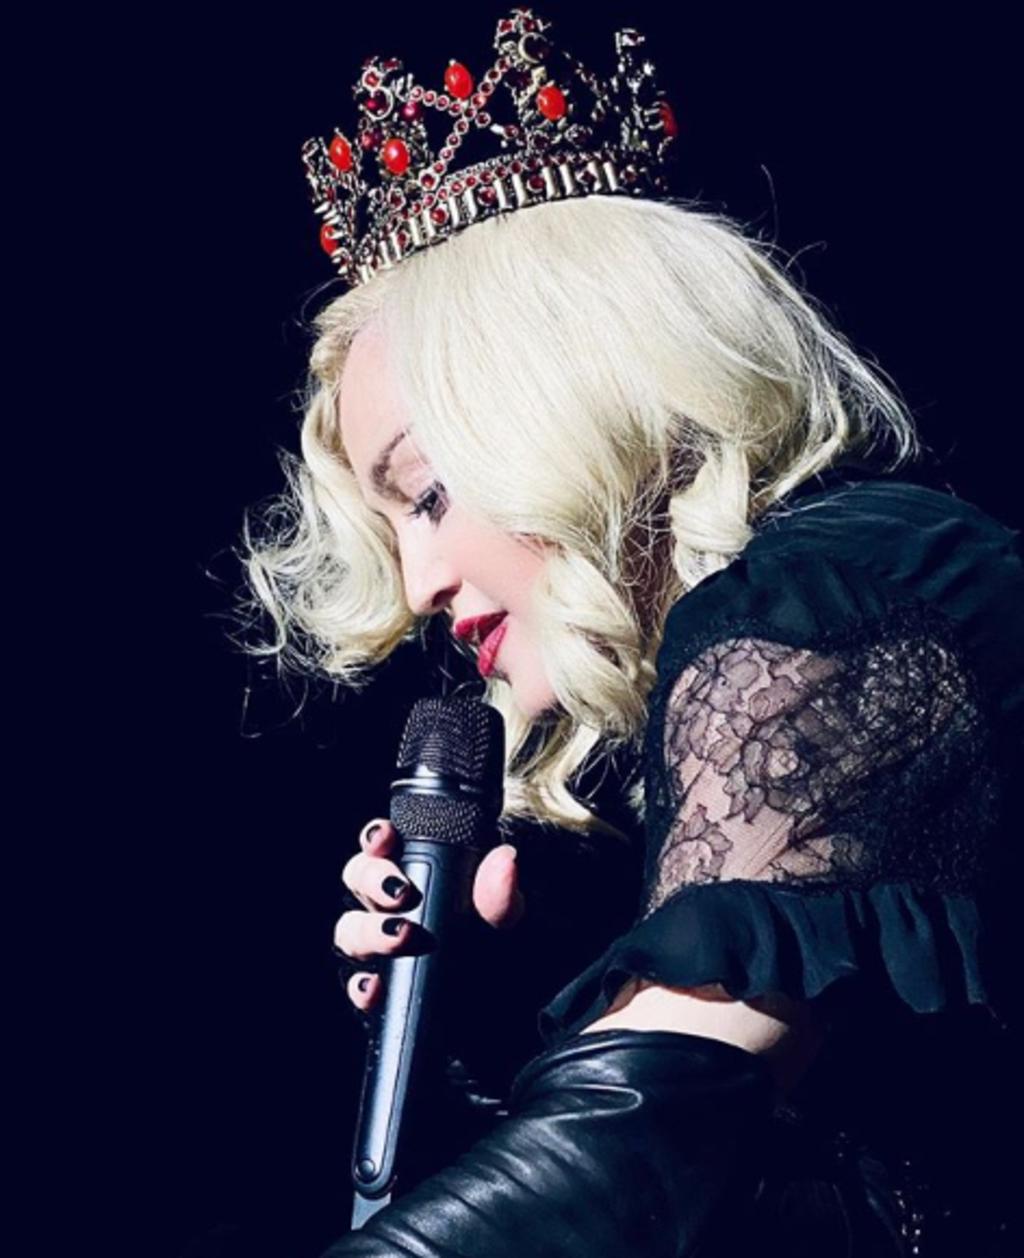 Madonna vuelve esta noche a los escenarios tras cancelar su último concierto